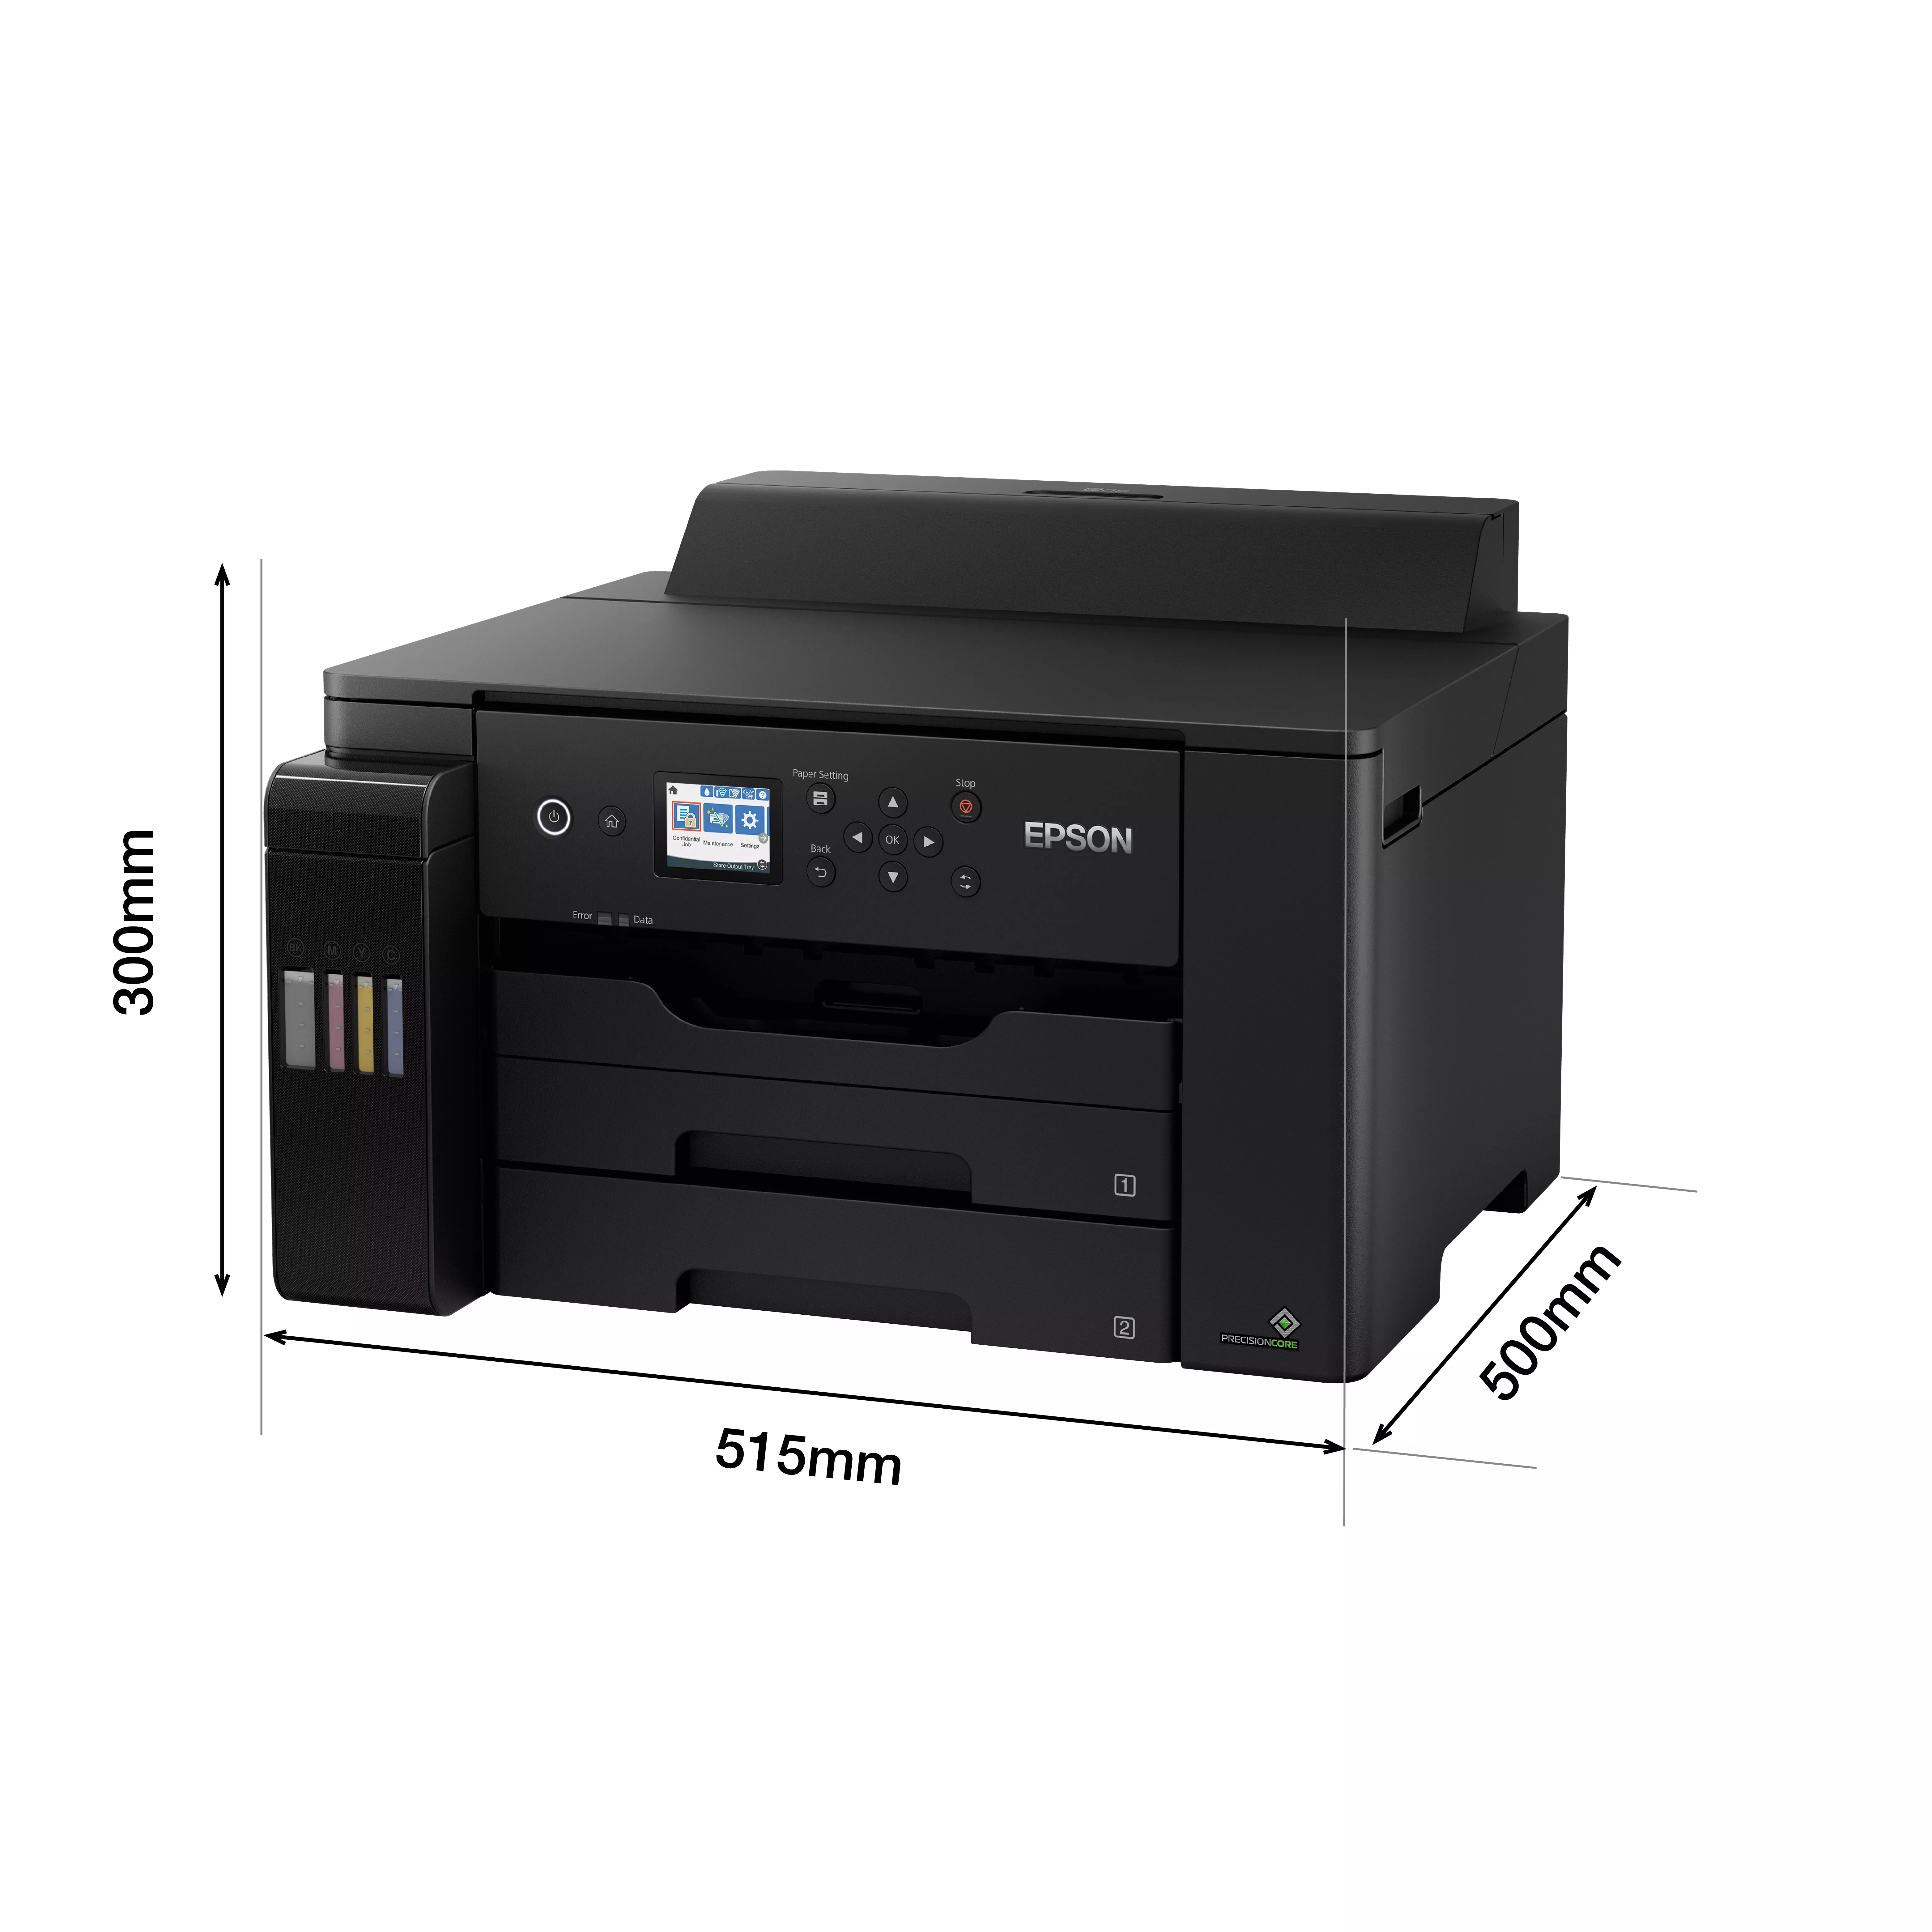 Vente EPSON EcoTank ET-16150 A3+ Inkjet Color Printer MFP Epson au meilleur prix - visuel 4